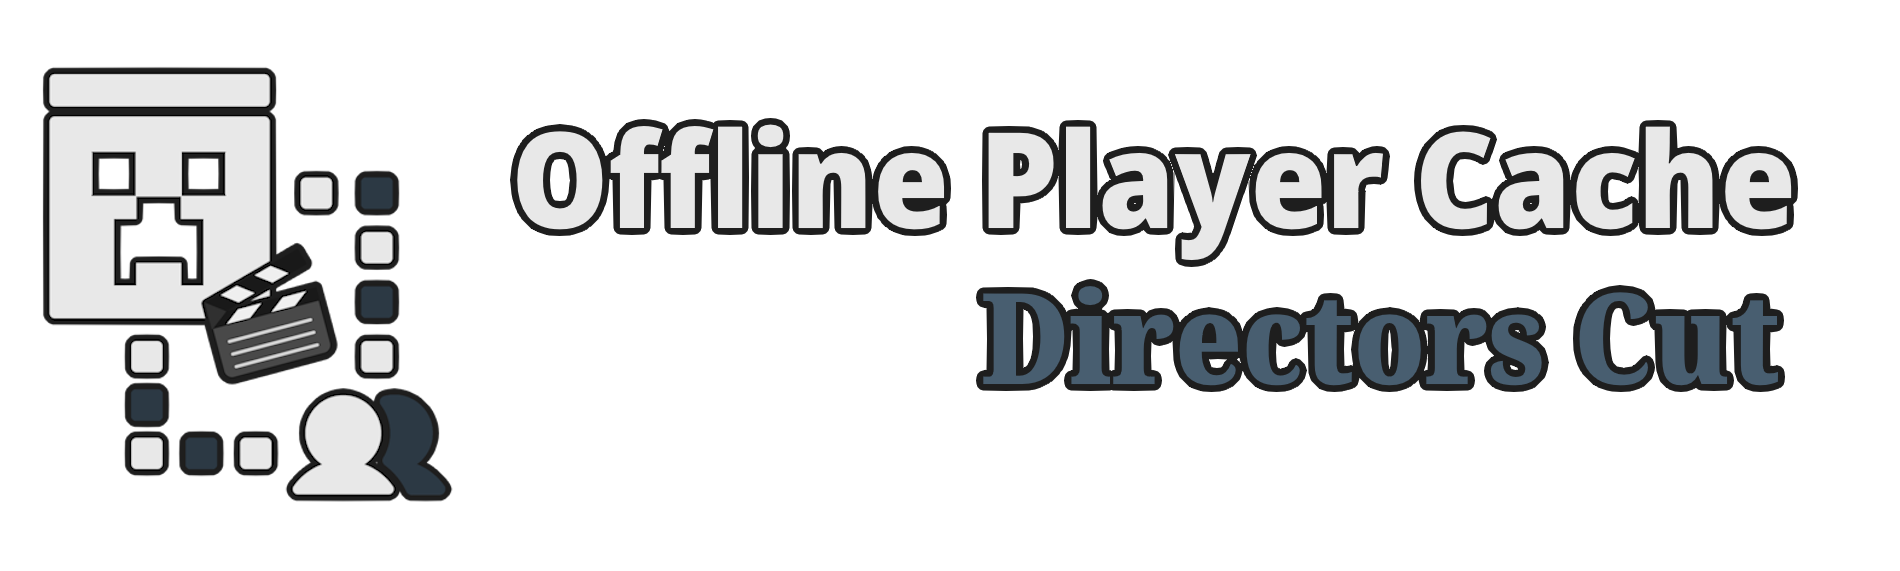 Offline Player Cache Banner